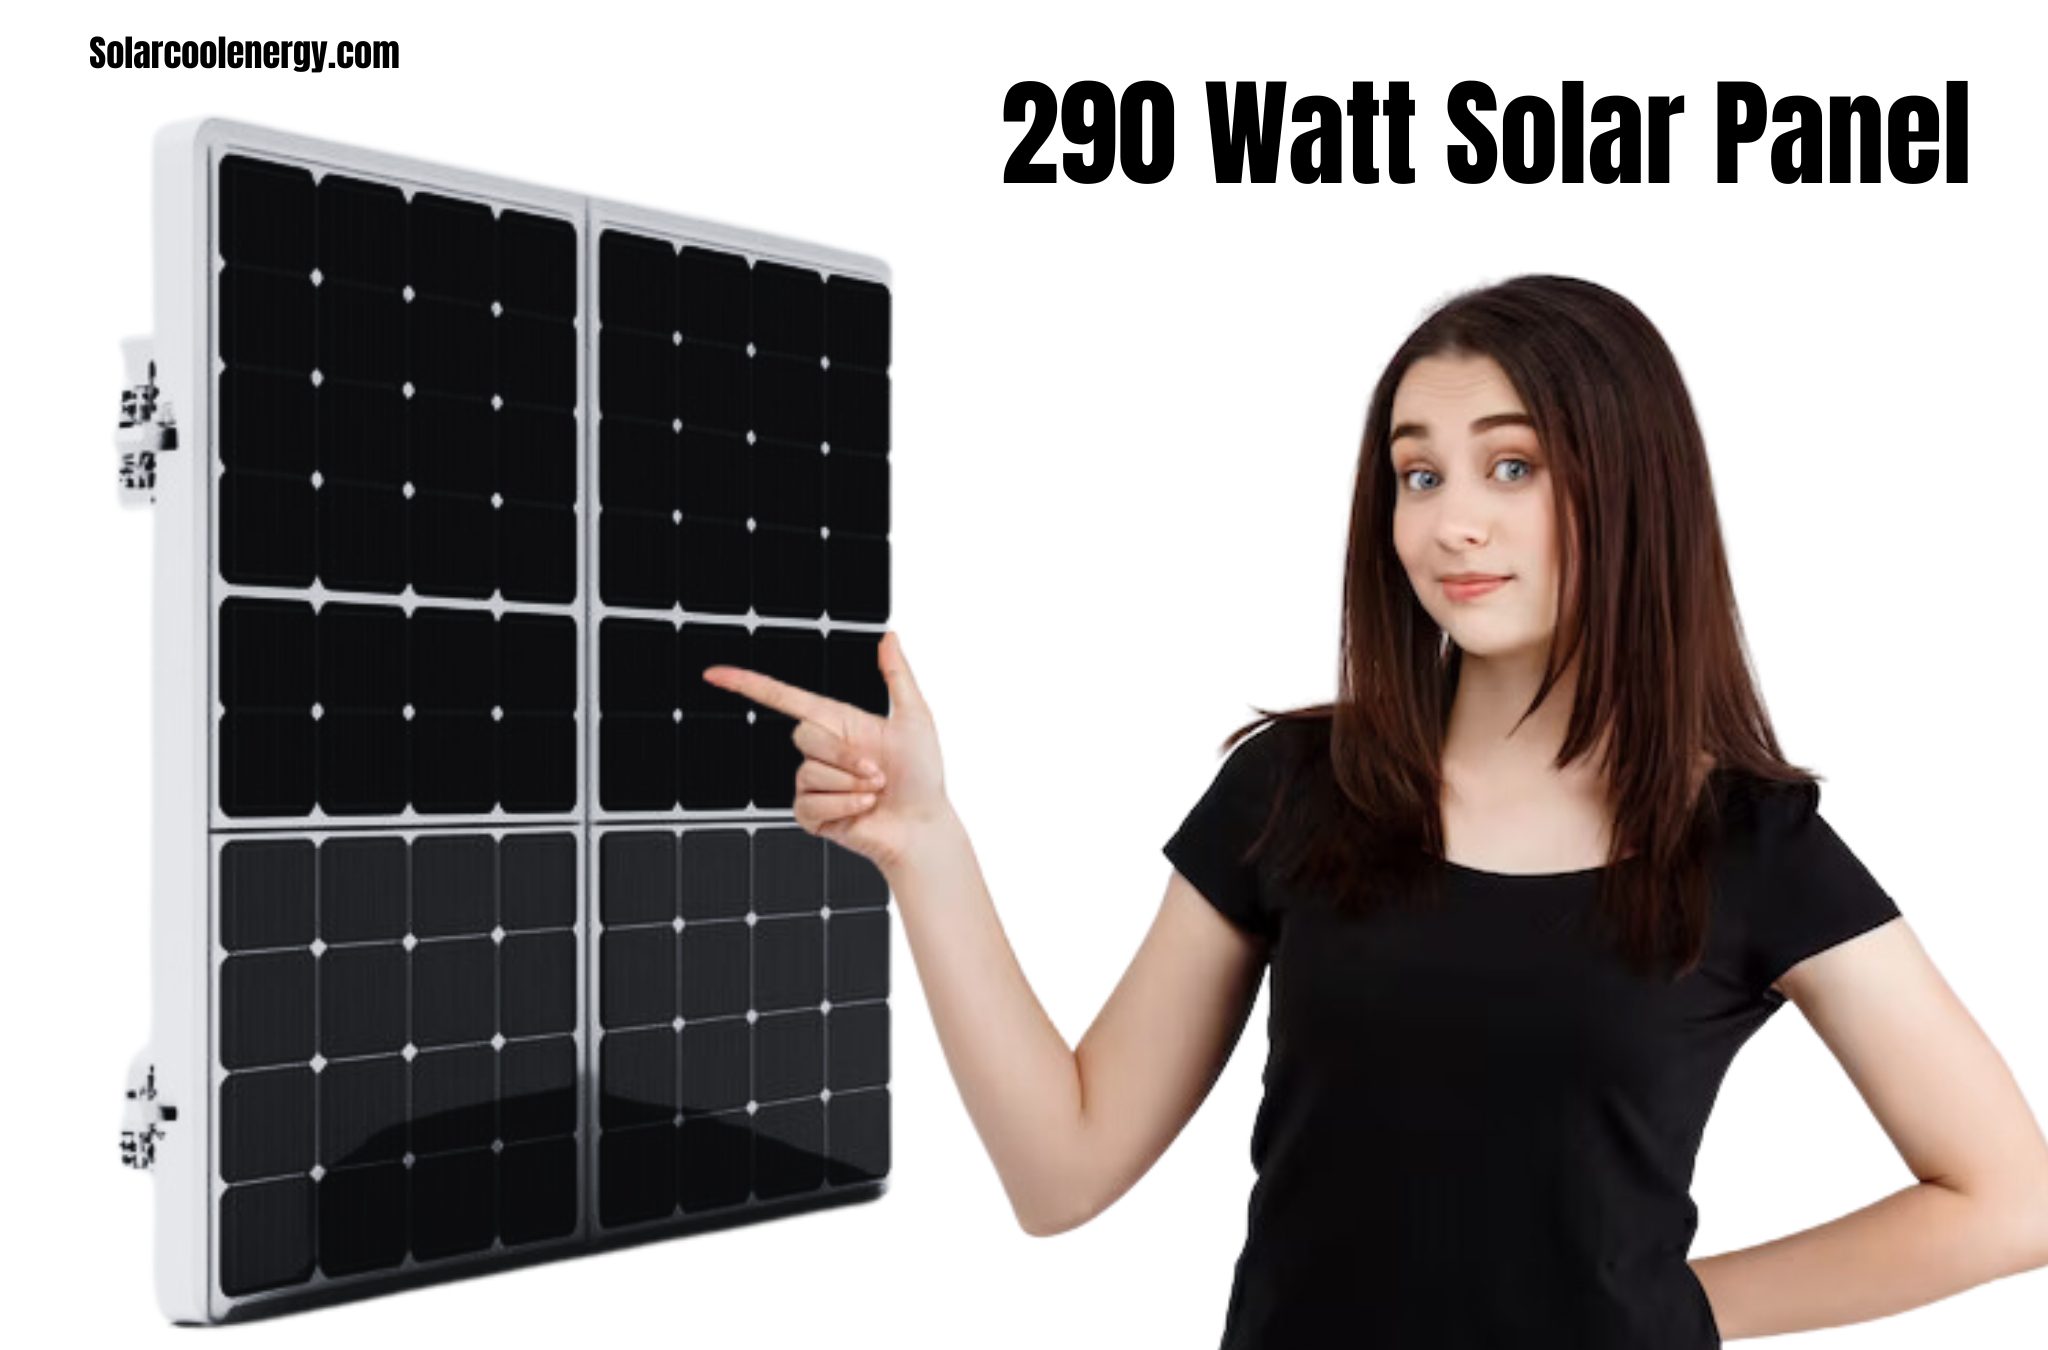 290 Watt Solar Panel